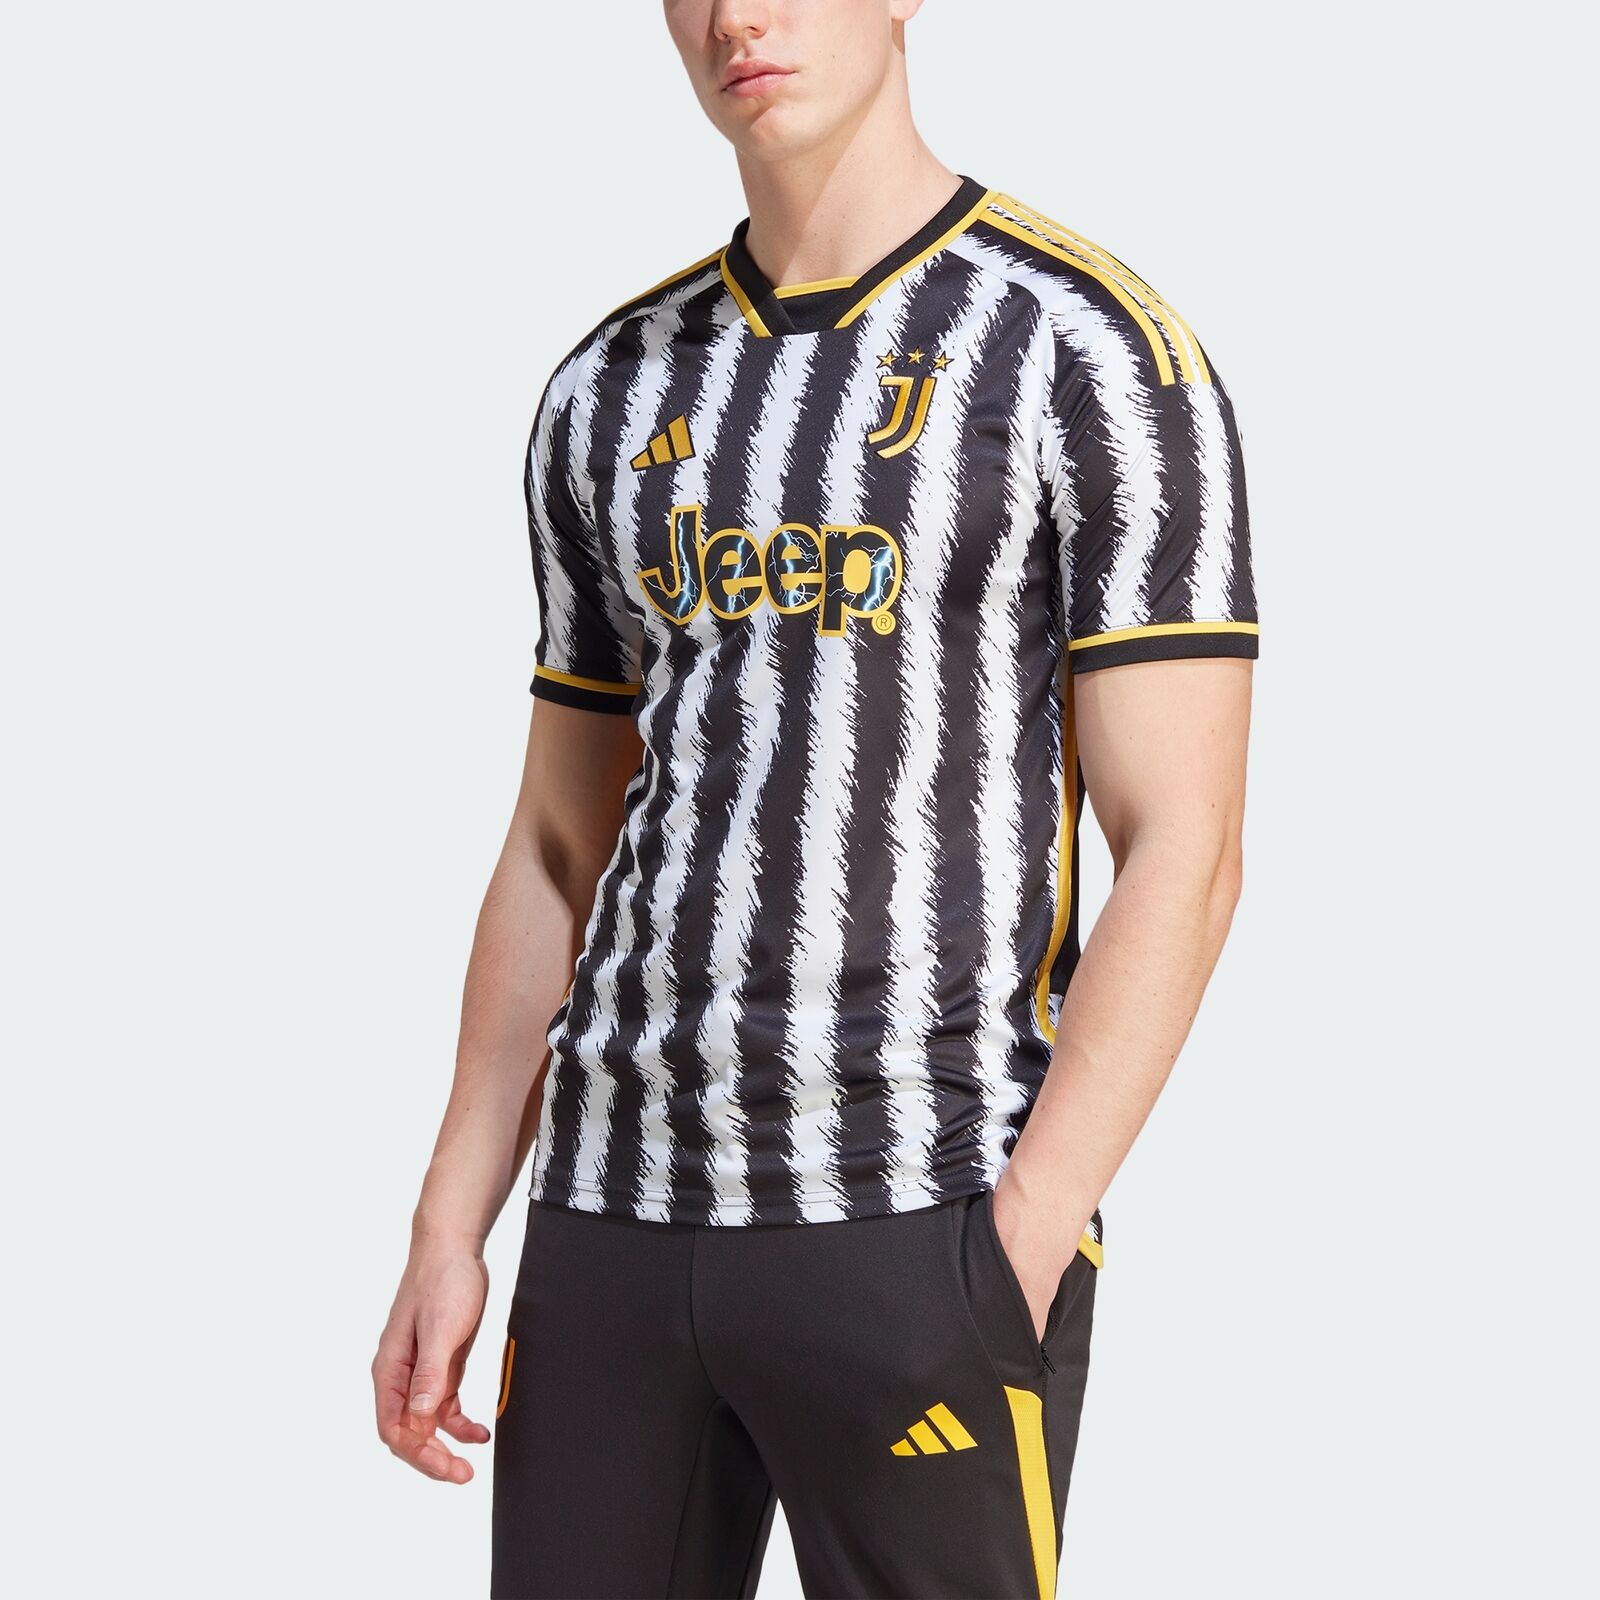 adidas Juventus 2023/24 Home Soccer Jersey $17.60 + Free Shipping